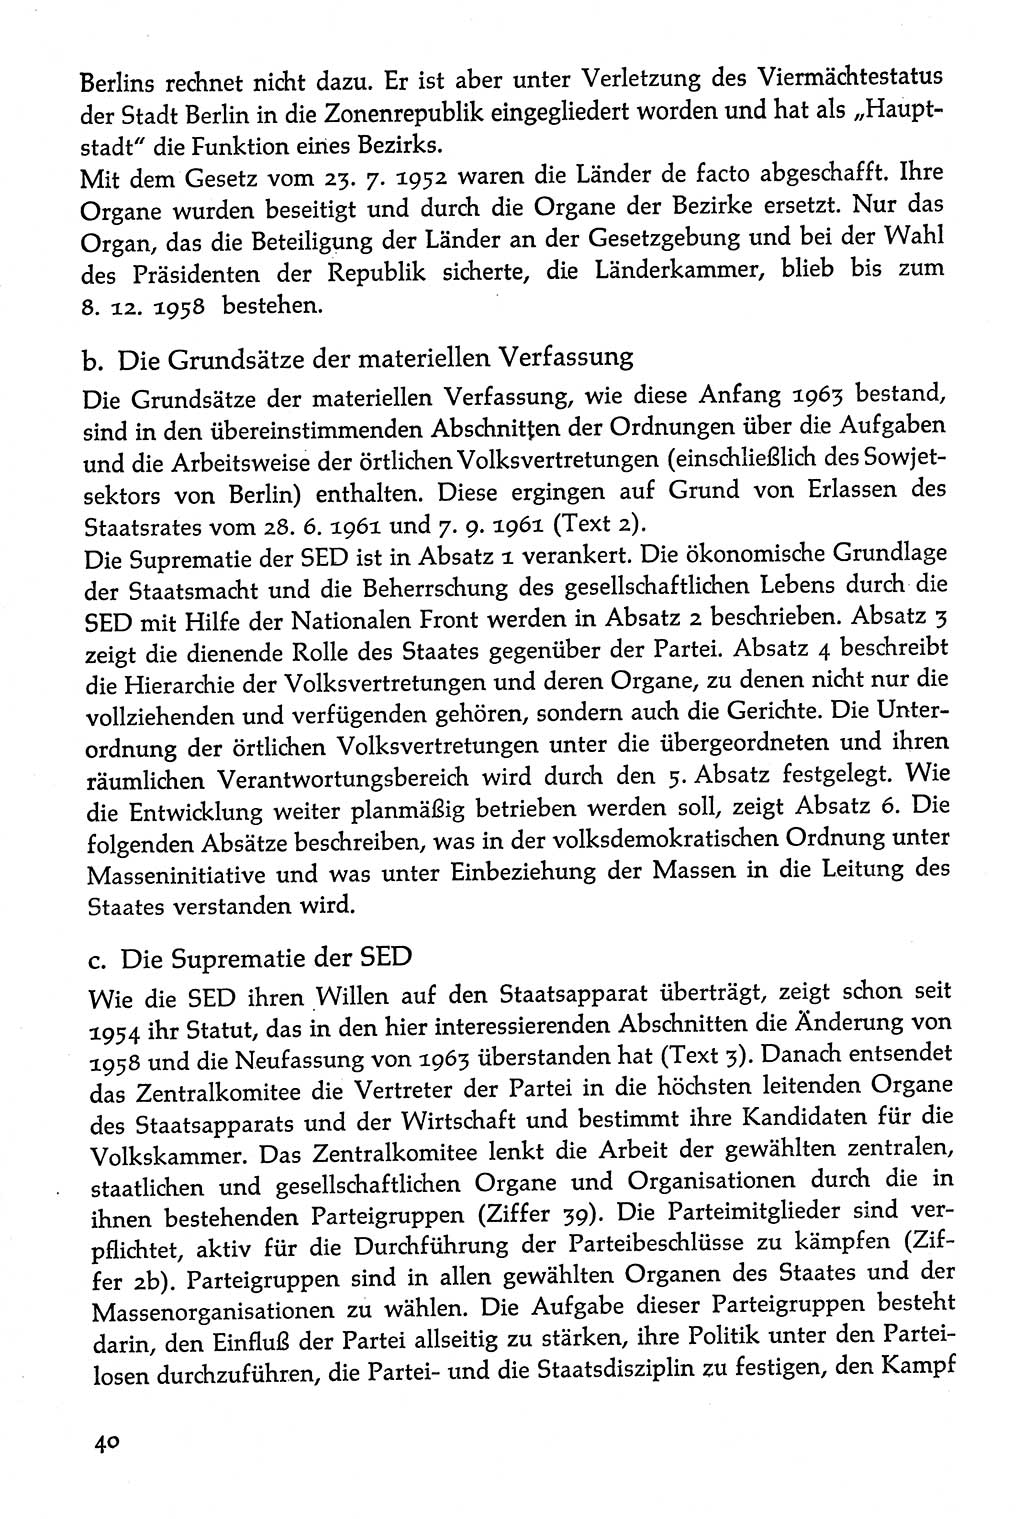 Volksdemokratische Ordnung in Mitteldeutschland [Deutsche Demokratische Republik (DDR)], Texte zur verfassungsrechtlichen Situation 1963, Seite 40 (Volksdem. Ordn. Md. DDR 1963, S. 40)